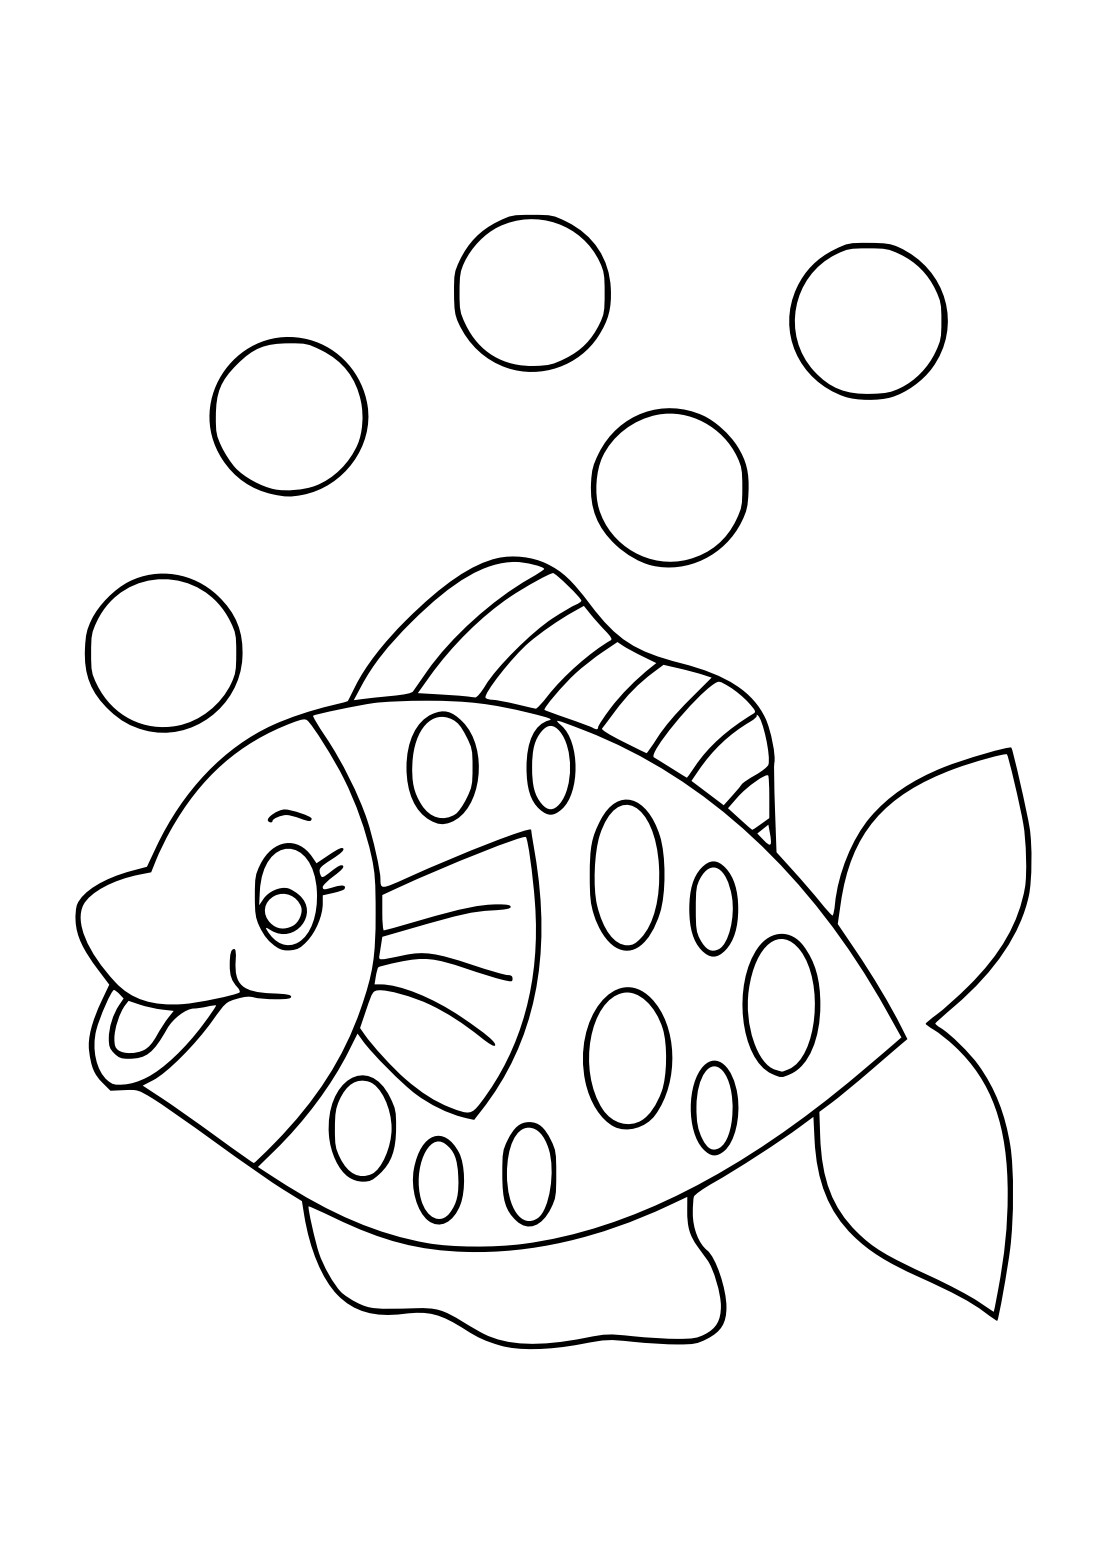 Раскраска рыбка. Рыбка раскраска для детей. Рыбка для раскрашивания для детей. Трафарет "рыбки". Пластилинография средняя группа шаблоны